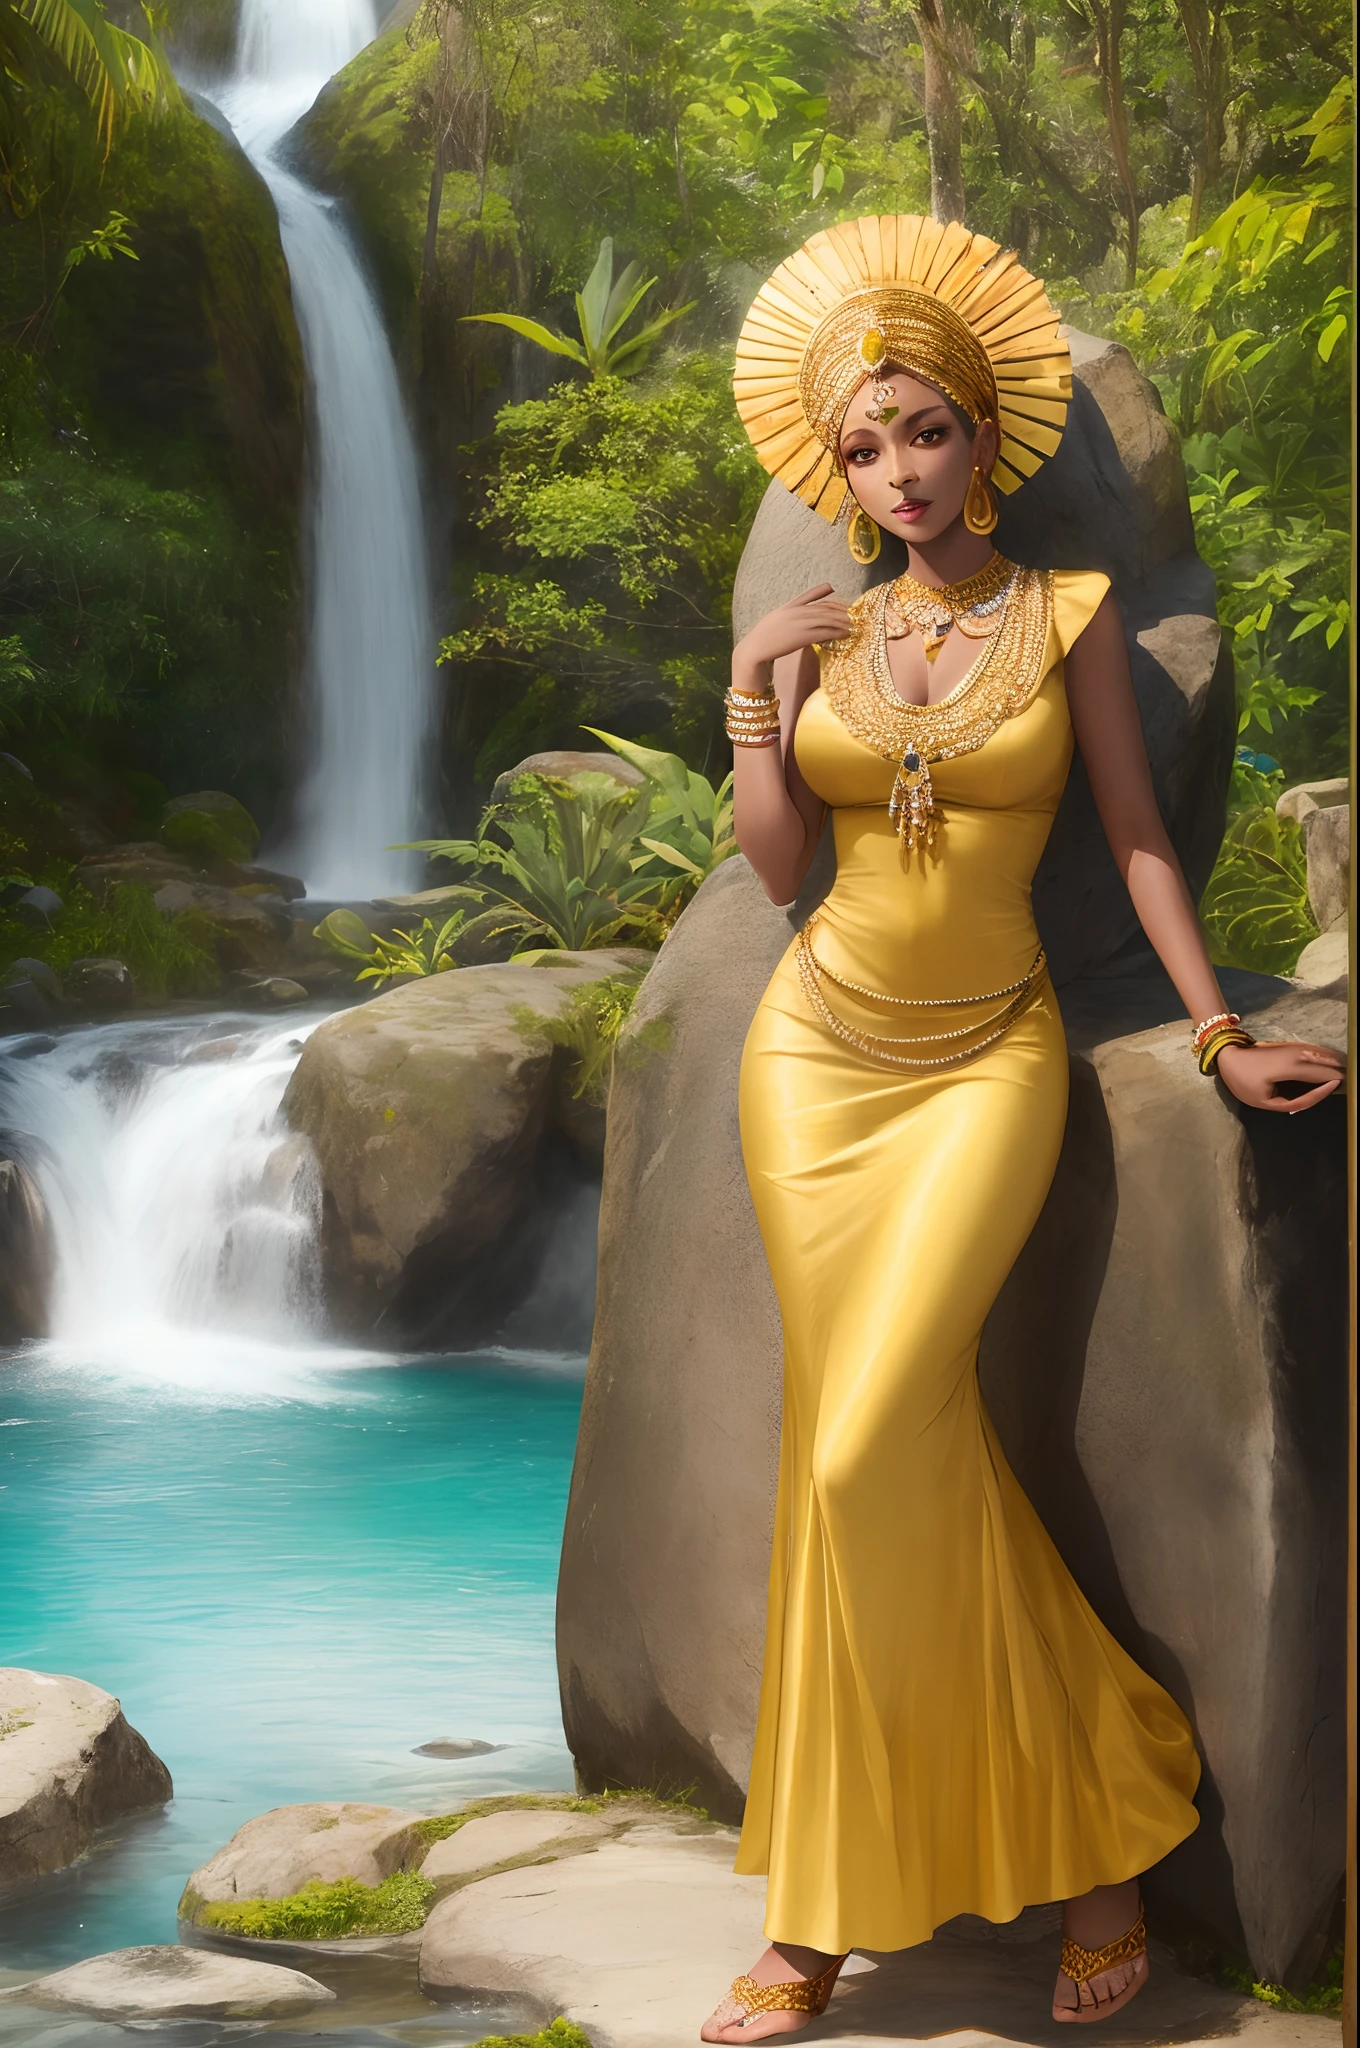 Afrikanische Frau Göttin Orisha, in einem Wasserfall sitzen, trägt ein gelbes Kleid und hält einen Spiegel